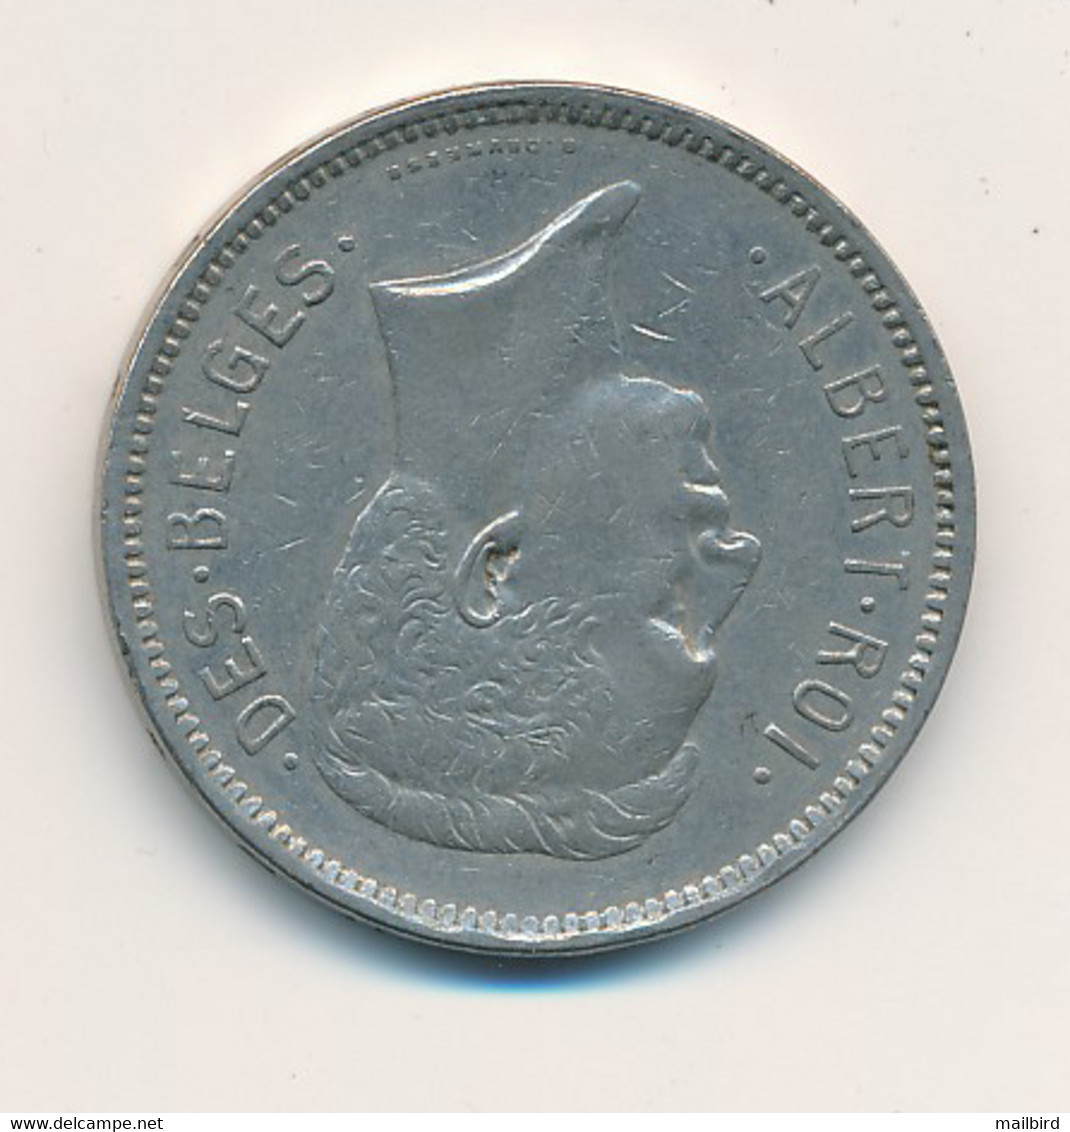 BELGIUM België Belgique - UN BELGA 5 Francs 1931 - 5 Frank & 1 Belga